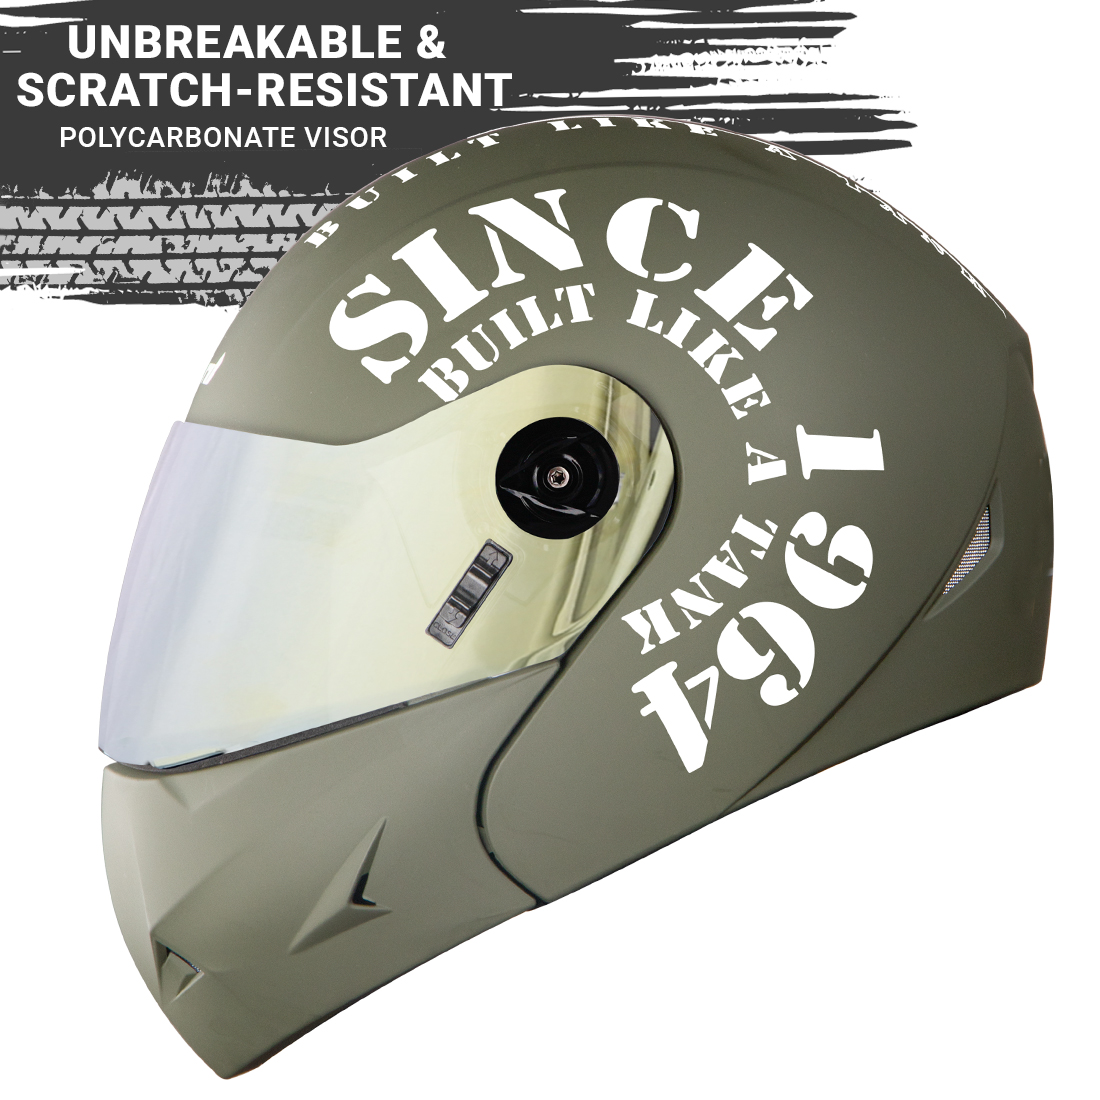 Steelbird SB-45 7Wings Award Tank Flip Up Graphic Helmet (Matt Battle Green White With Chrome Gold Visor)